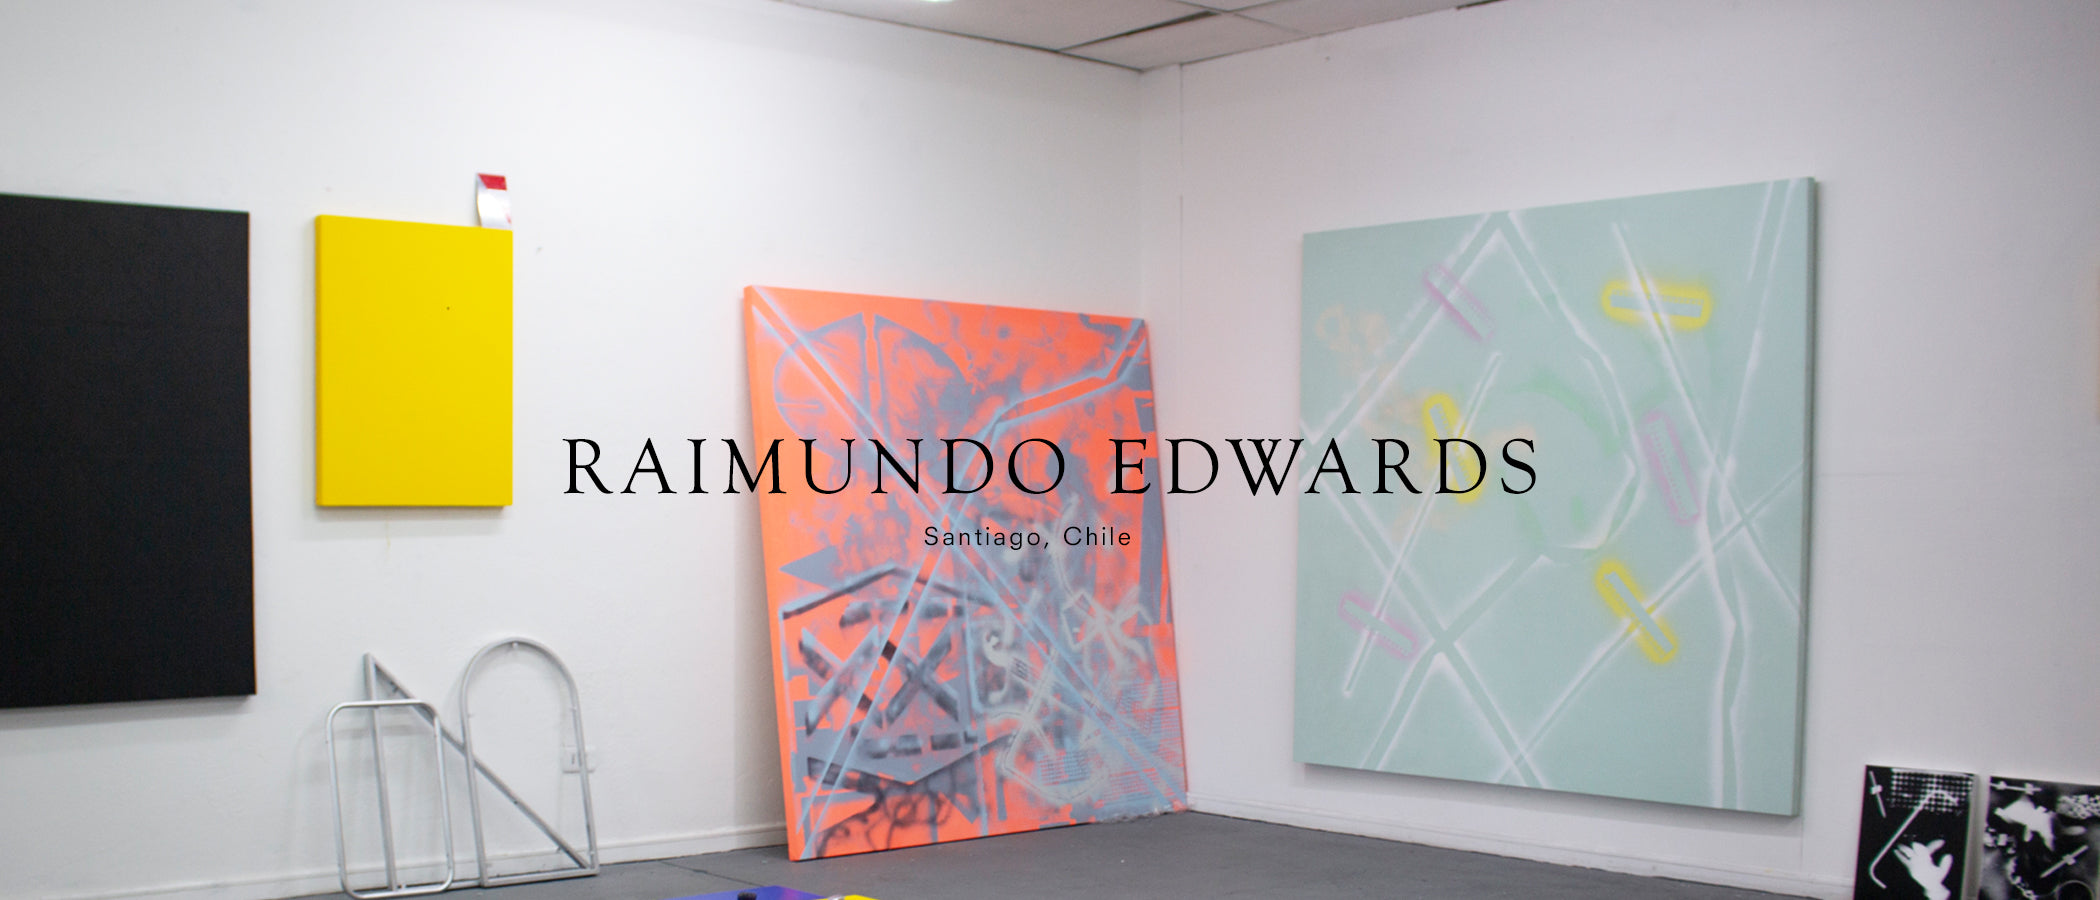 Raimundo Edwards